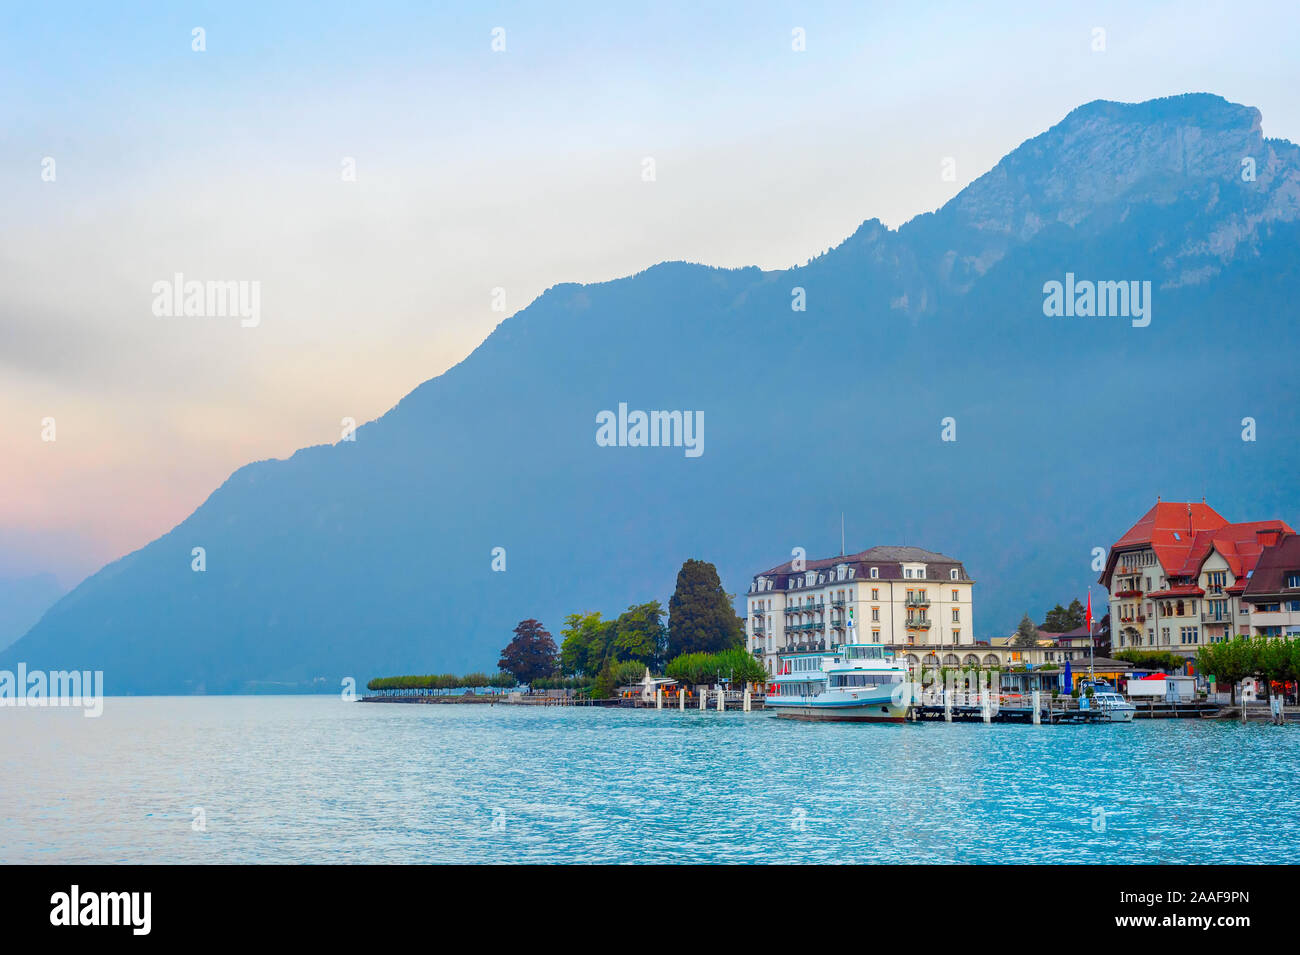 Paysage avec Sunrise resort remblai à Lac de montagne, la location des bateaux touristiques, Autriche Banque D'Images